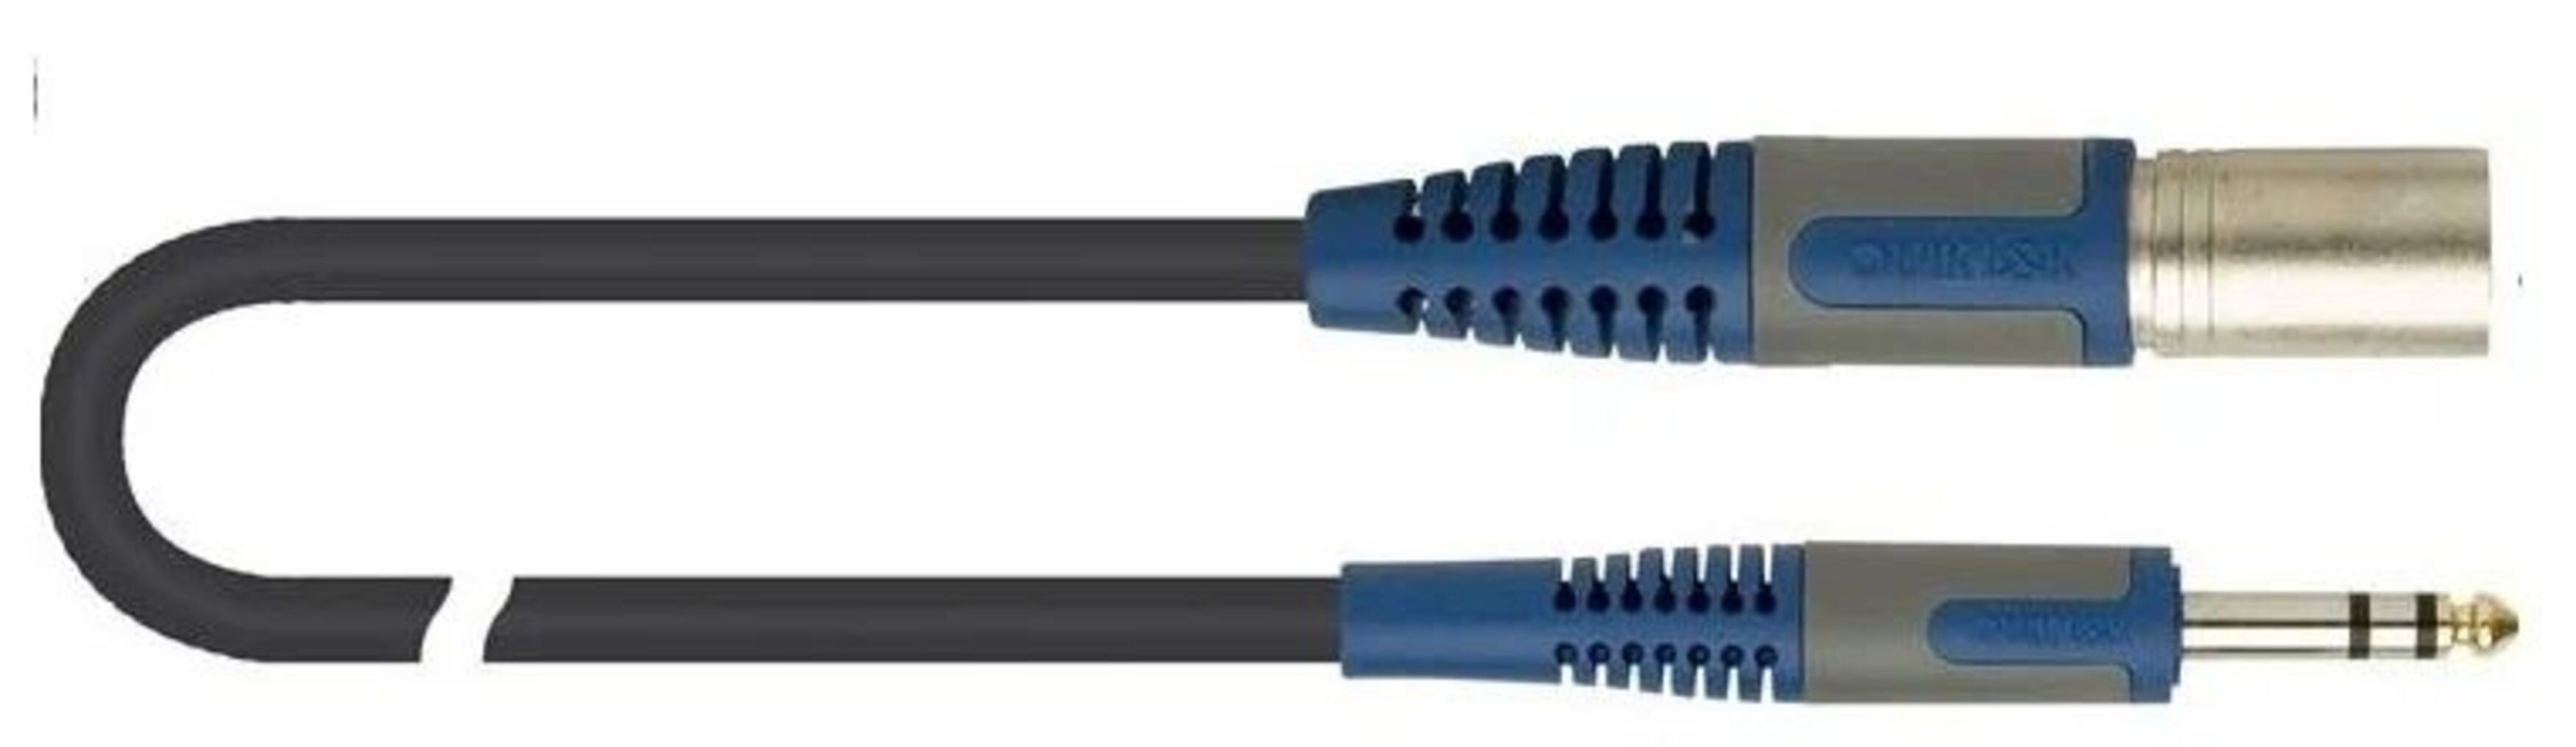 Микрофонный кабель Quik Lok RKSM344-5 с разъемами XLR папа - Stereo Jack, 5 м